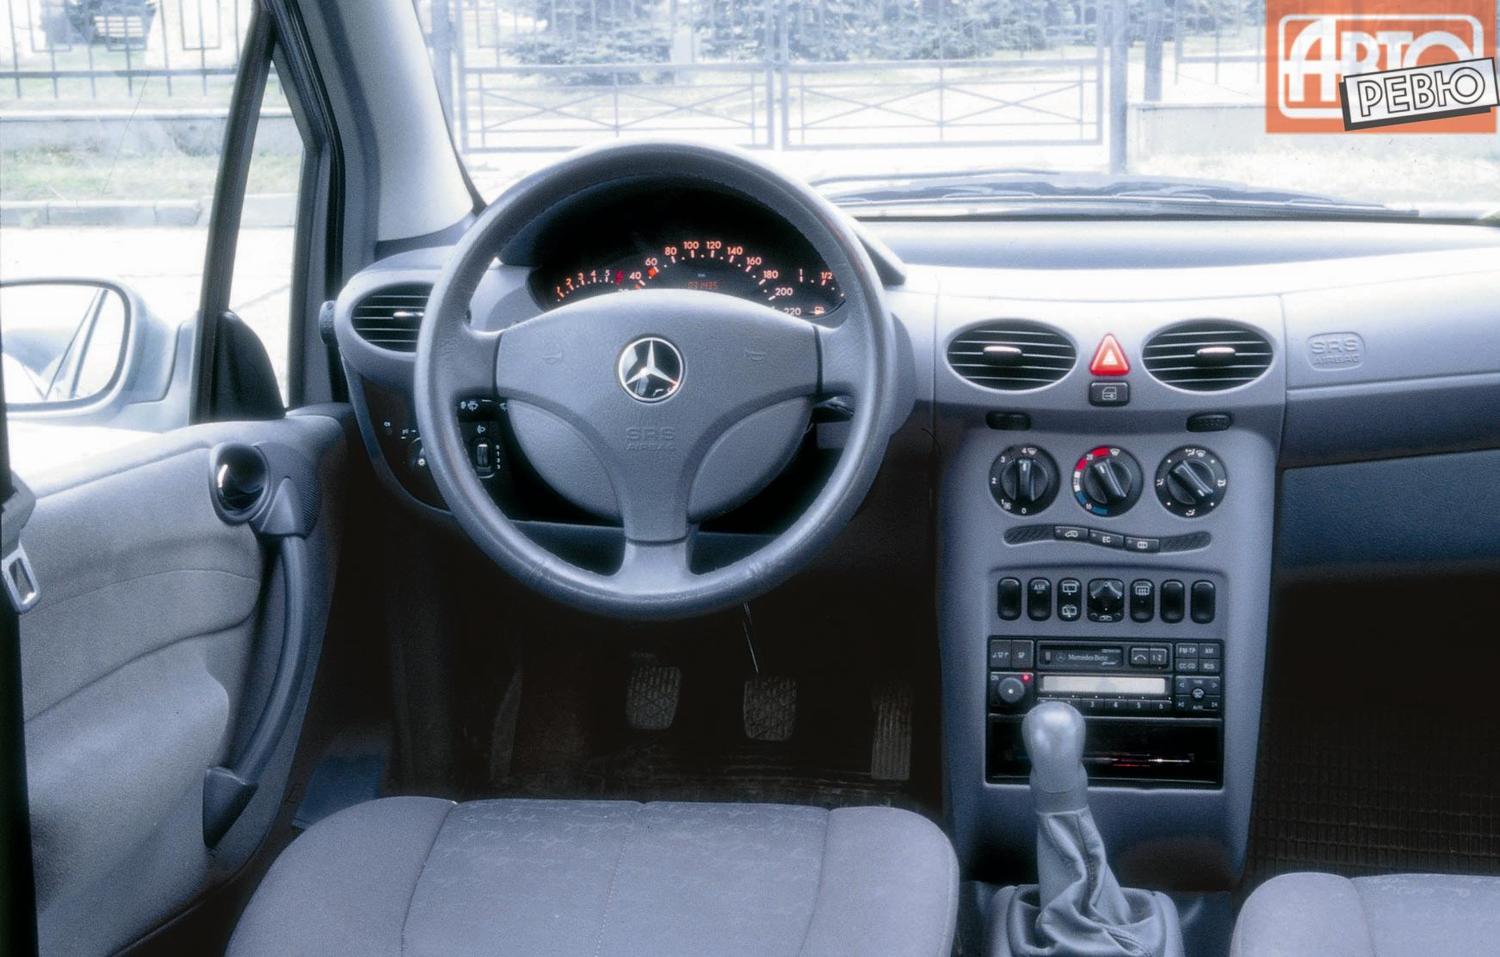 хэтчбек 5 дв. Mercedes-Benz A-klasse 1997 - 2001г выпуска модификация 1.4 AT (82 л.с.)